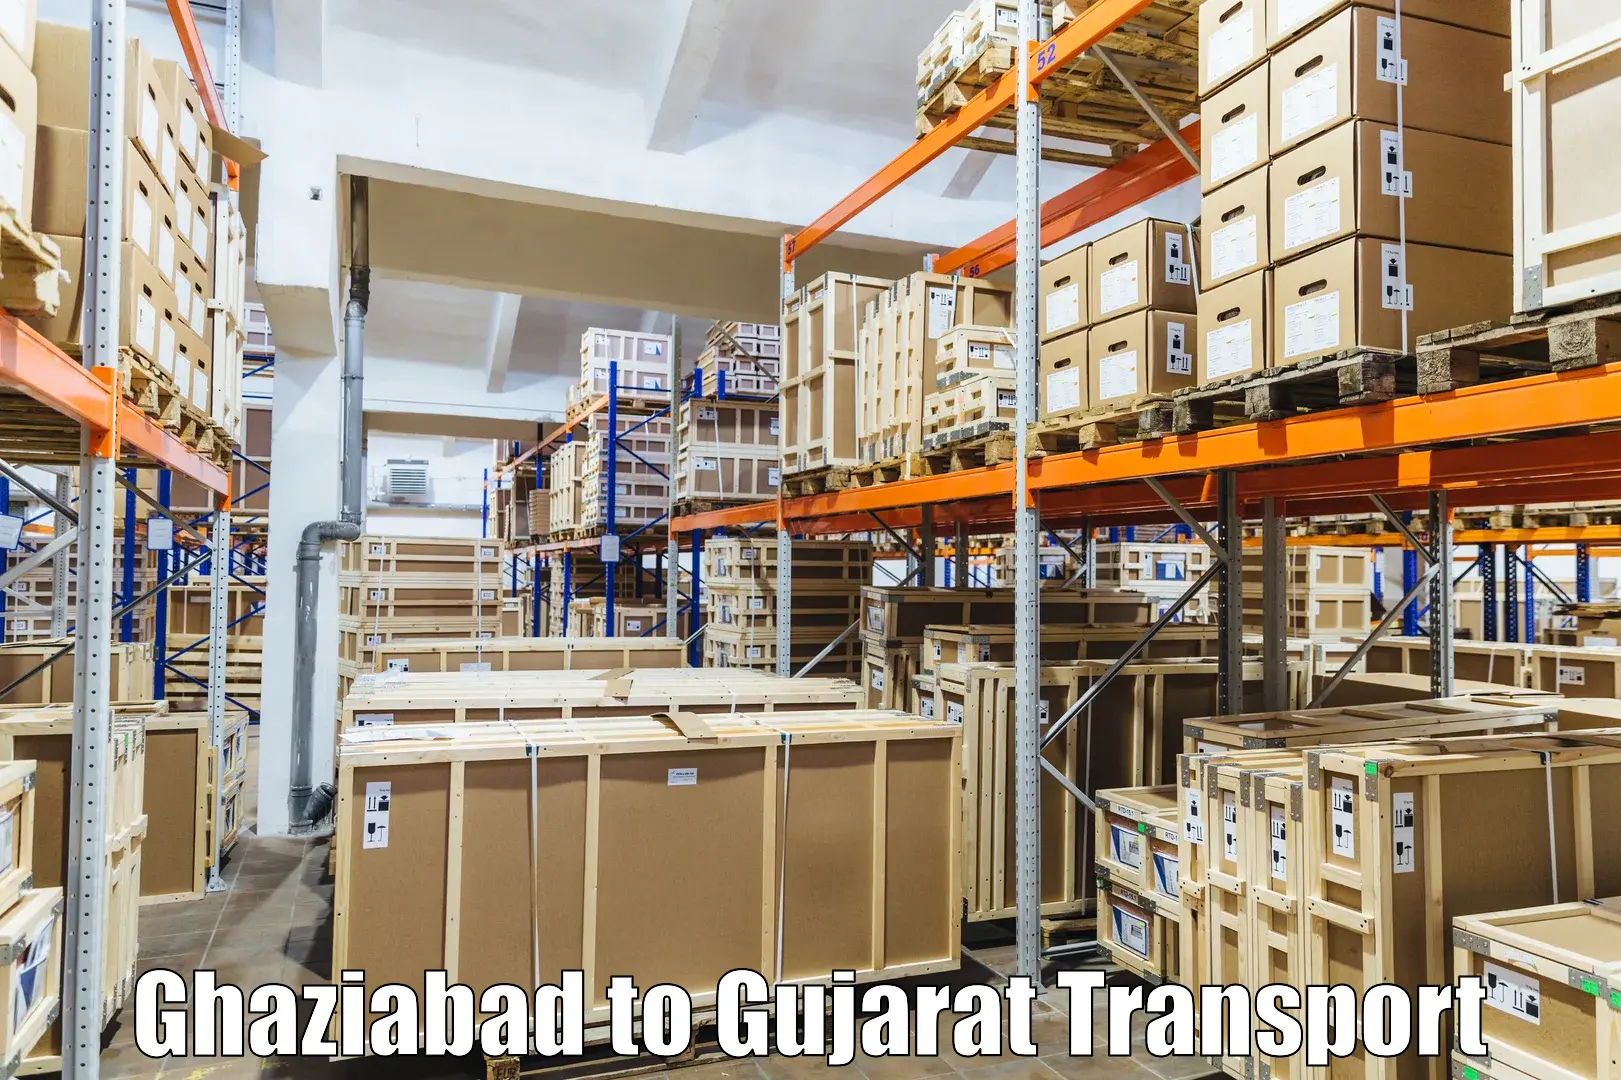 Online transport service Ghaziabad to IIIT Vadodara